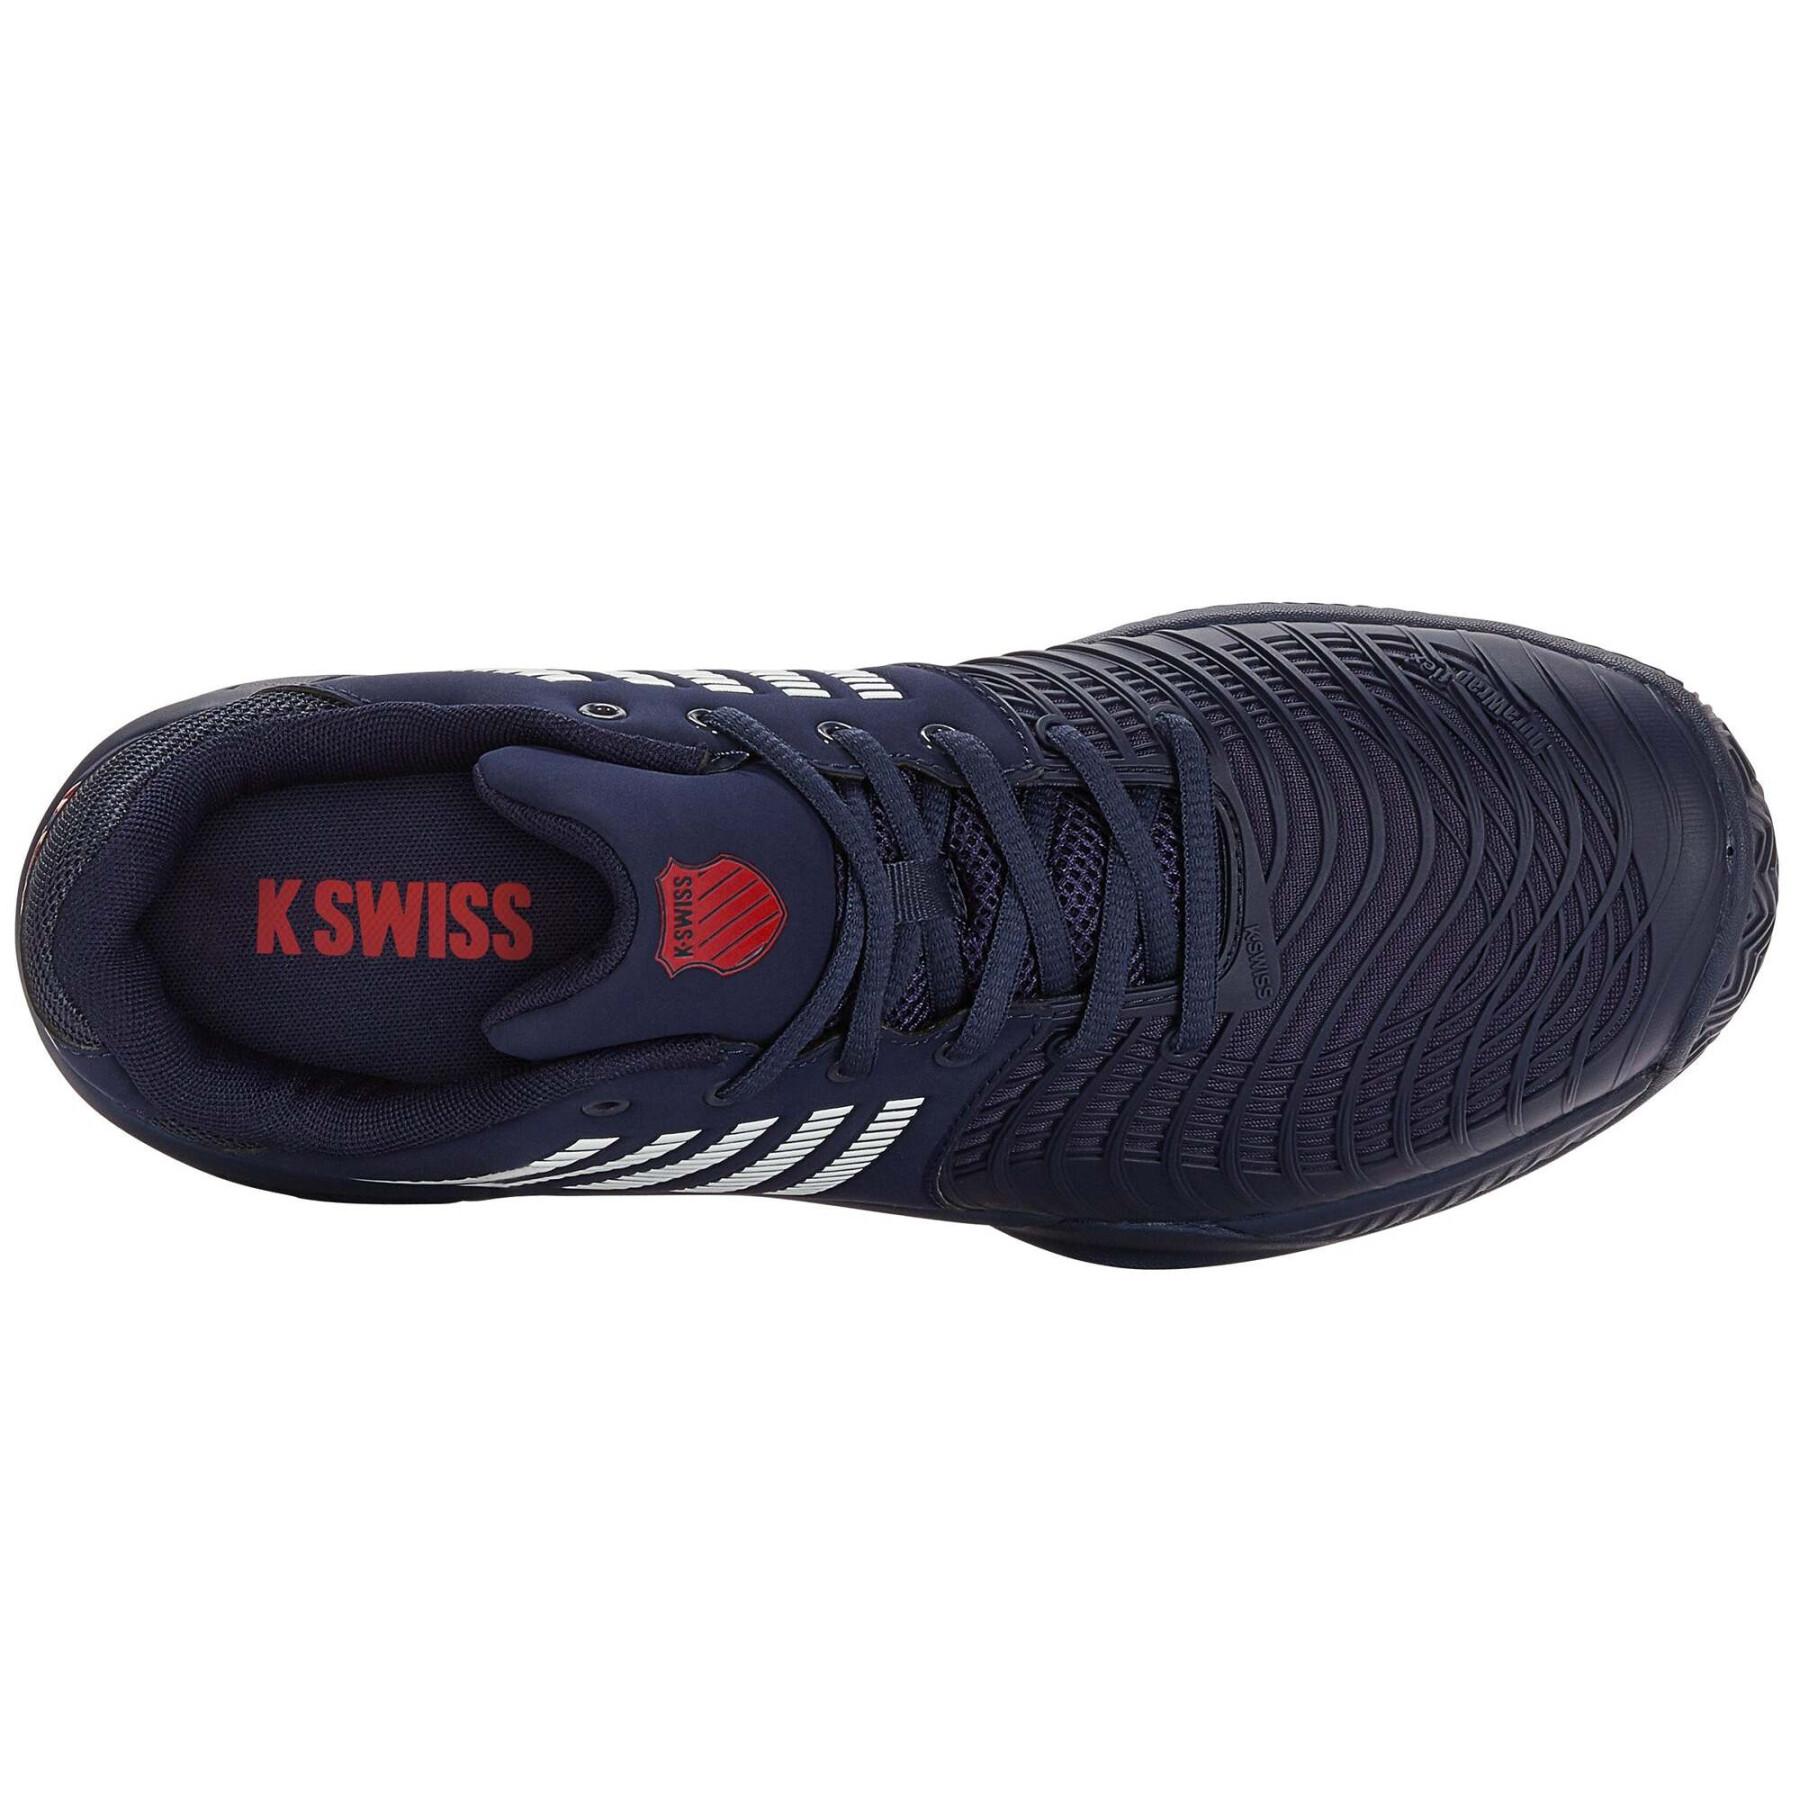 Chaussures de tennis K-Swiss Express Light 3 Hb